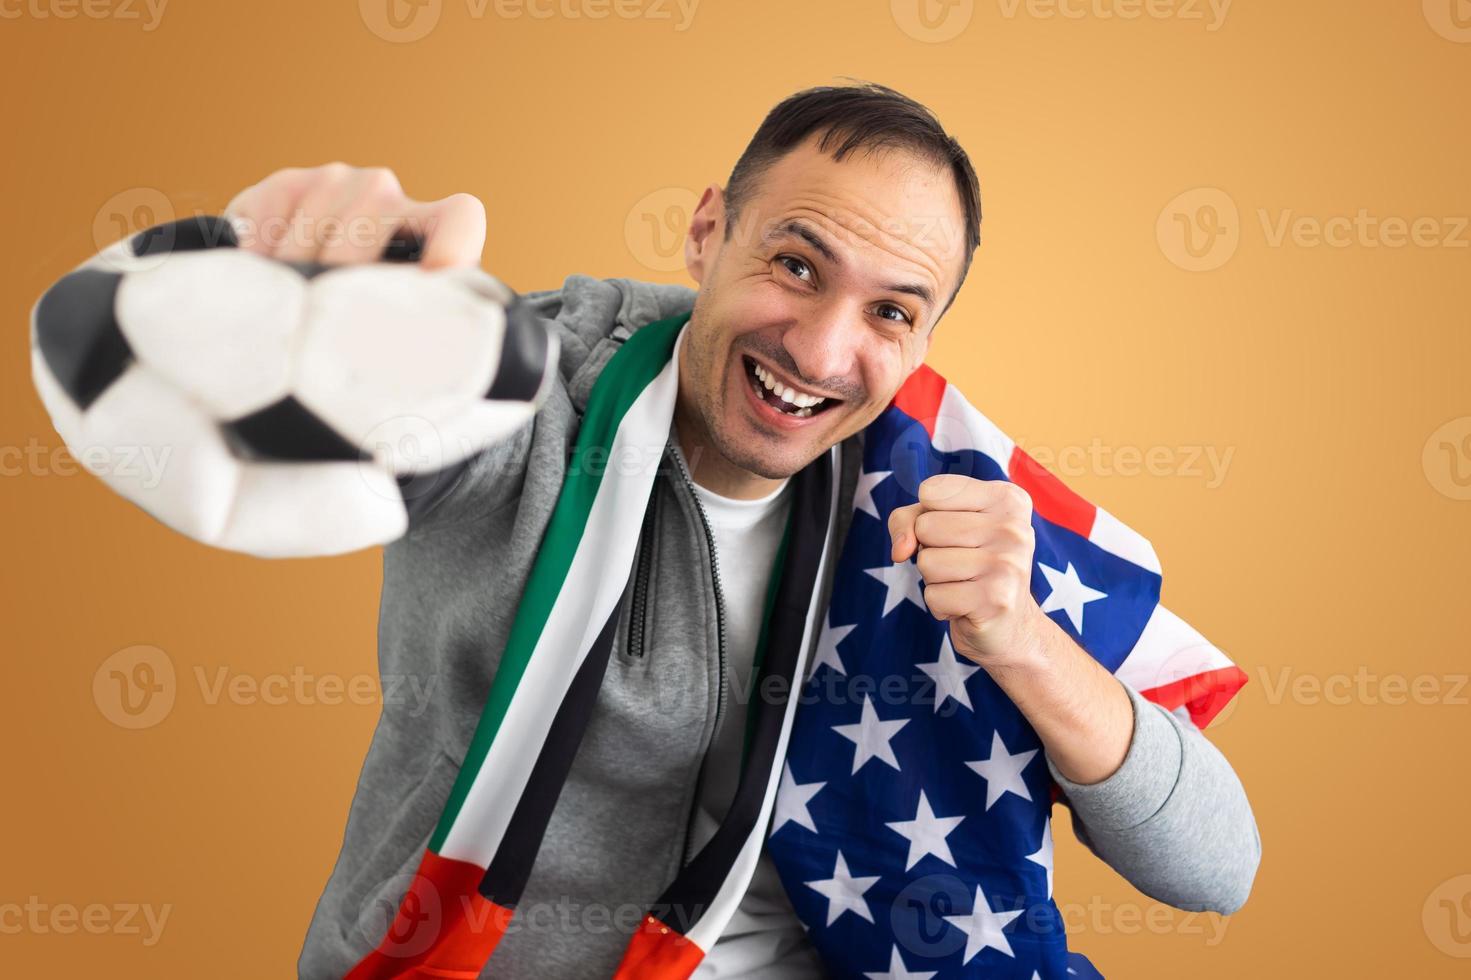 fã de futebol com uma bola amassada deformada e com a bandeira dos Emirados Árabes Unidos e dos EUA foto